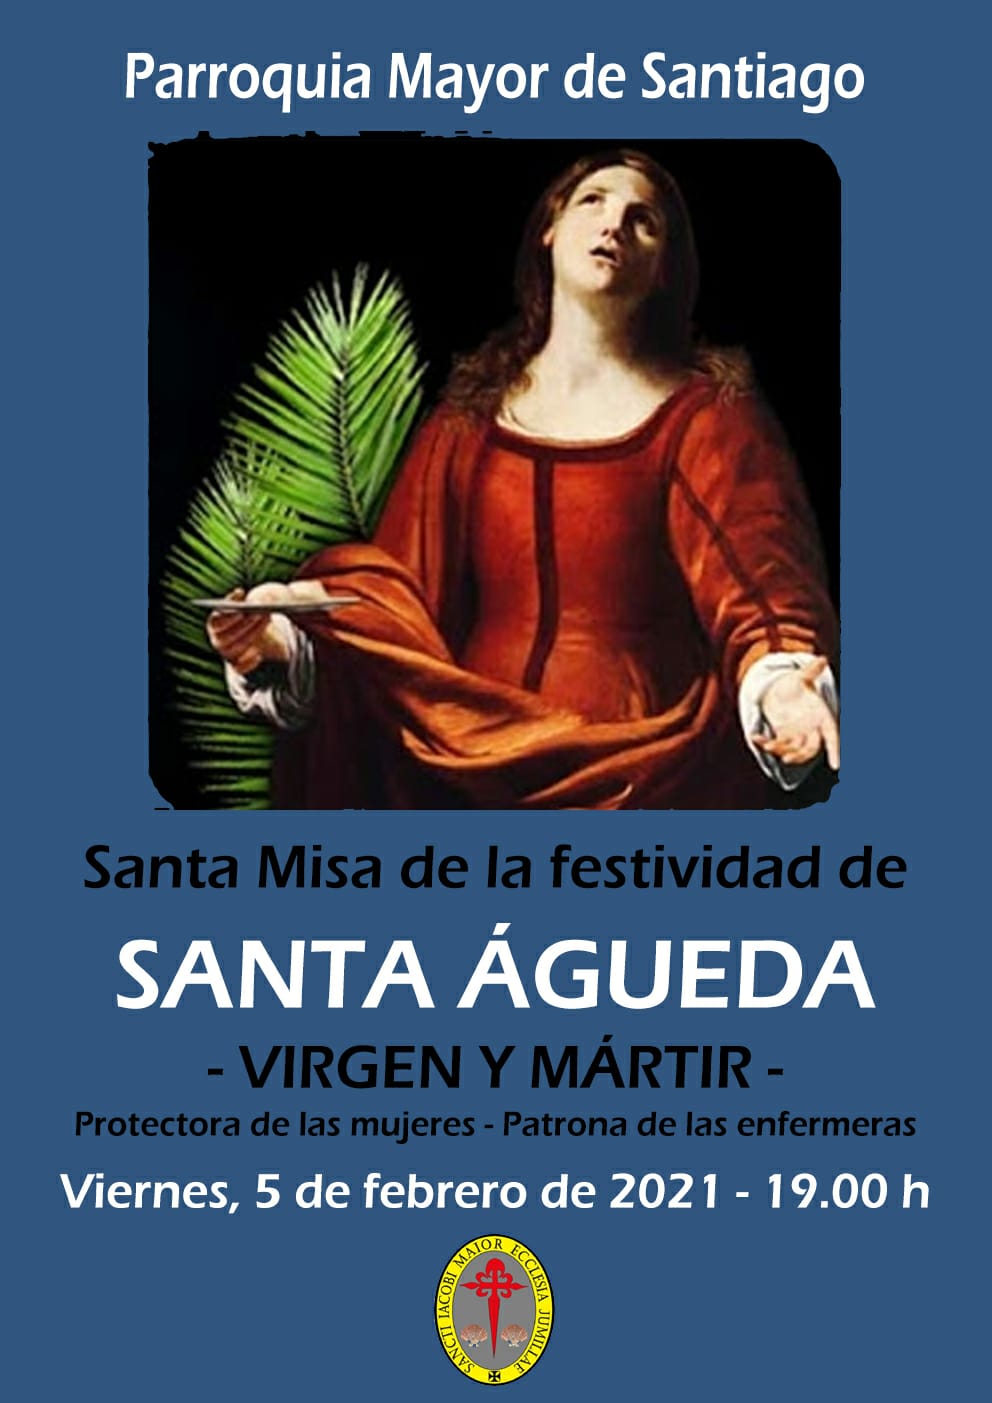 La iglesia de Santiago celebra mañana a las 19.00 h. su misa en honor a Santa Águeda